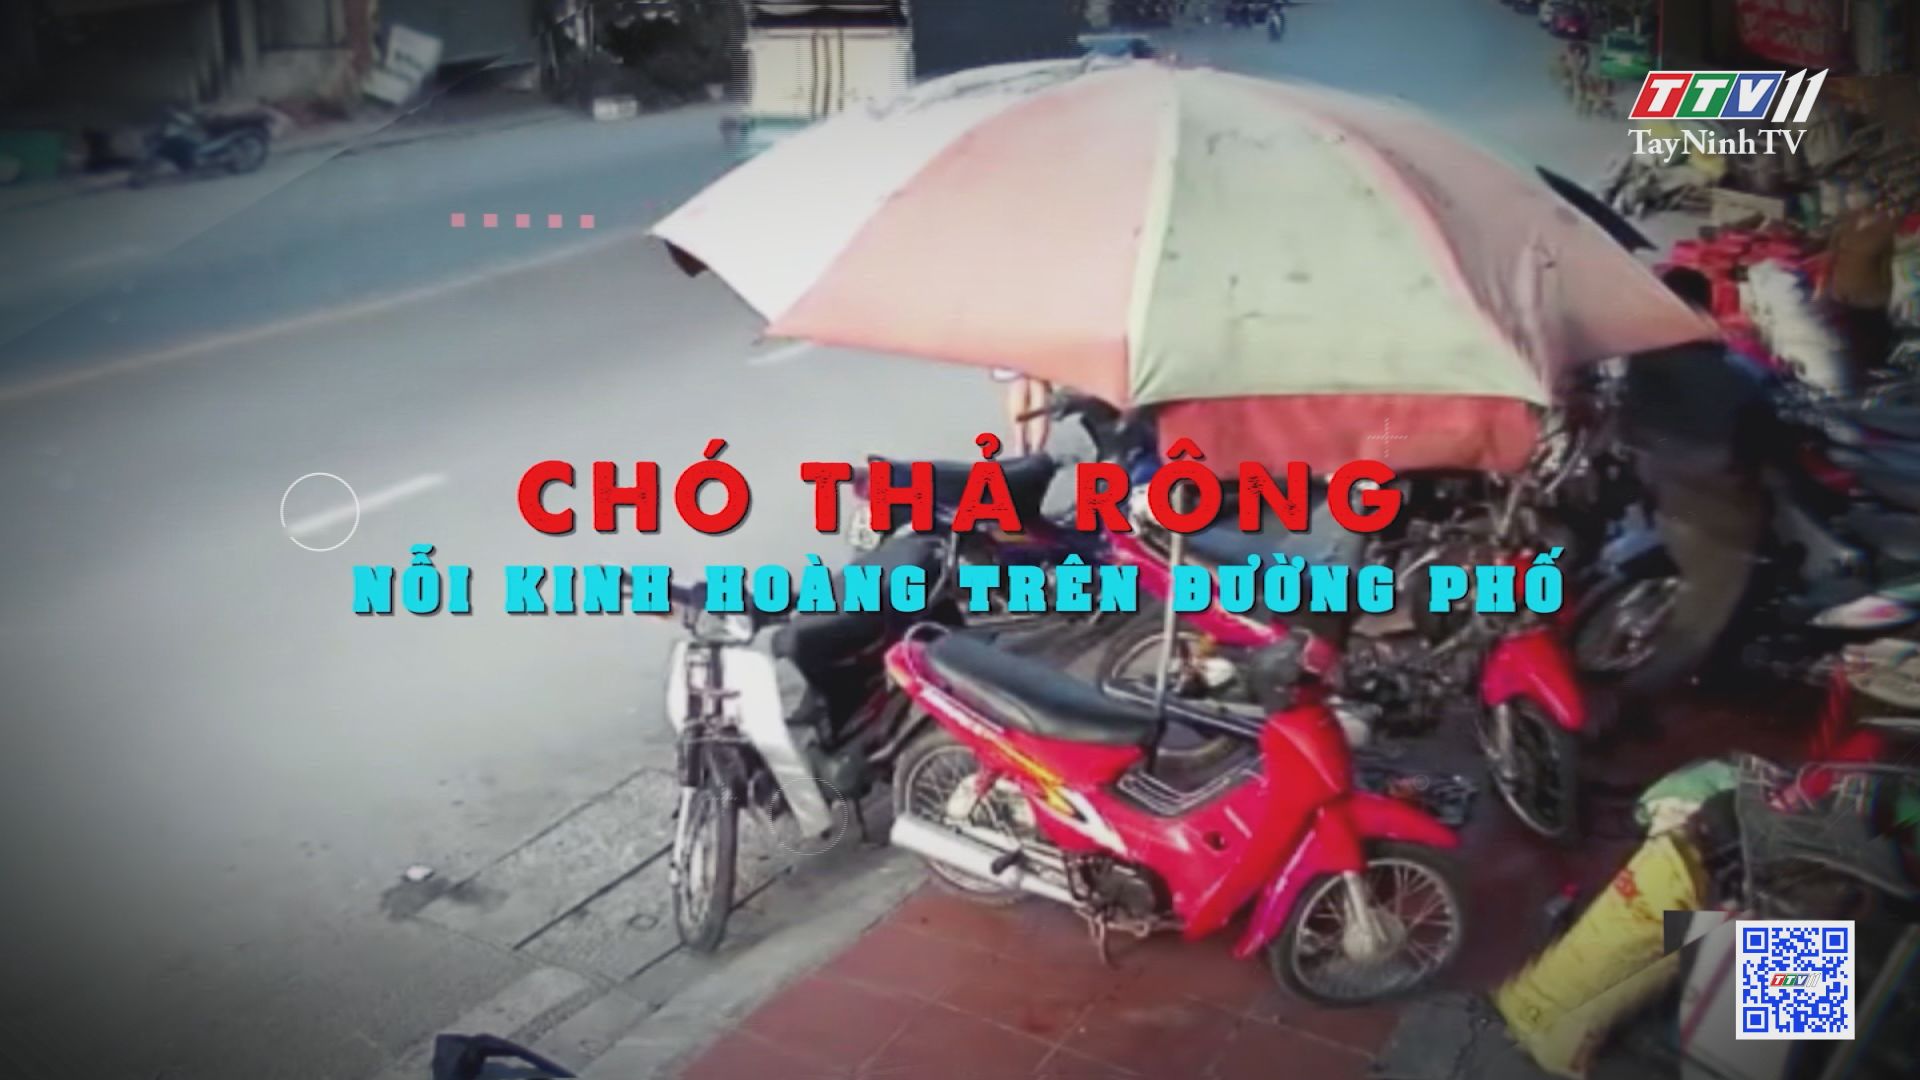 Chó thả rông, nỗi kinh hoàng trên đường phố | Văn hóa giao thông | TayNinhTV